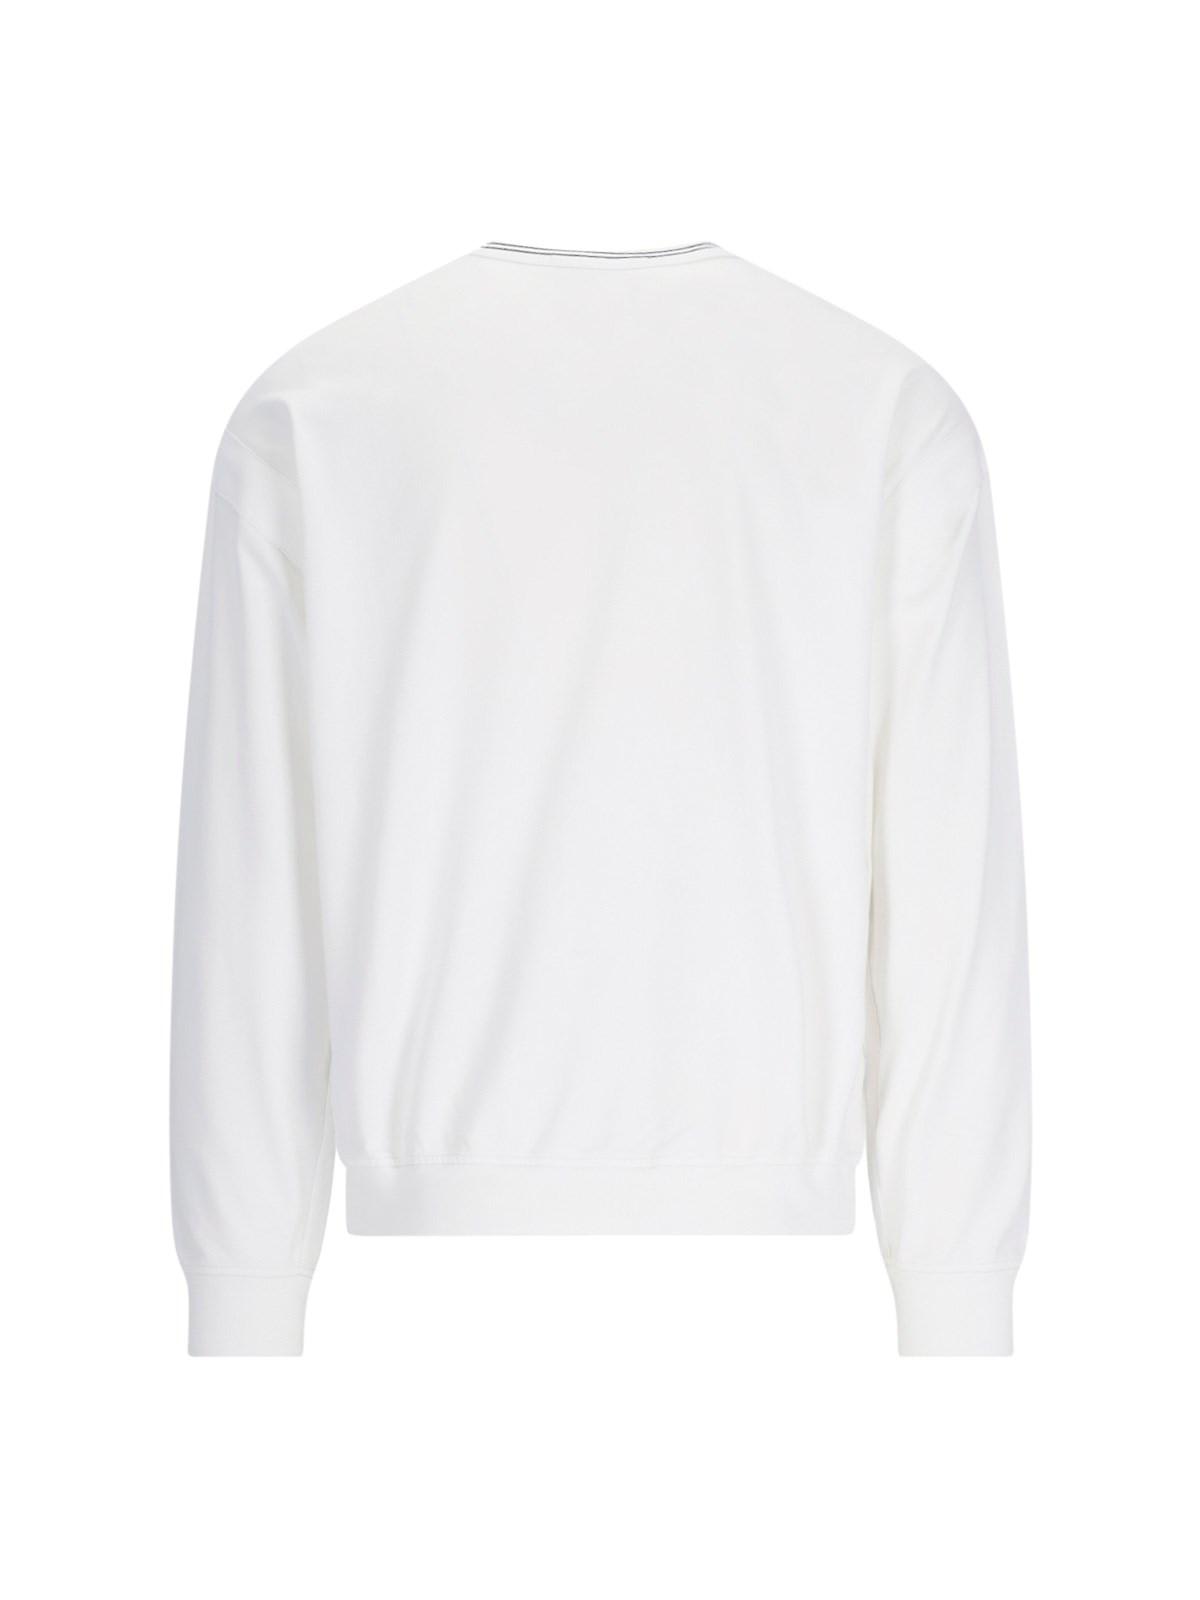 Stone Island Marina Crew Neck Sweatshirt In White